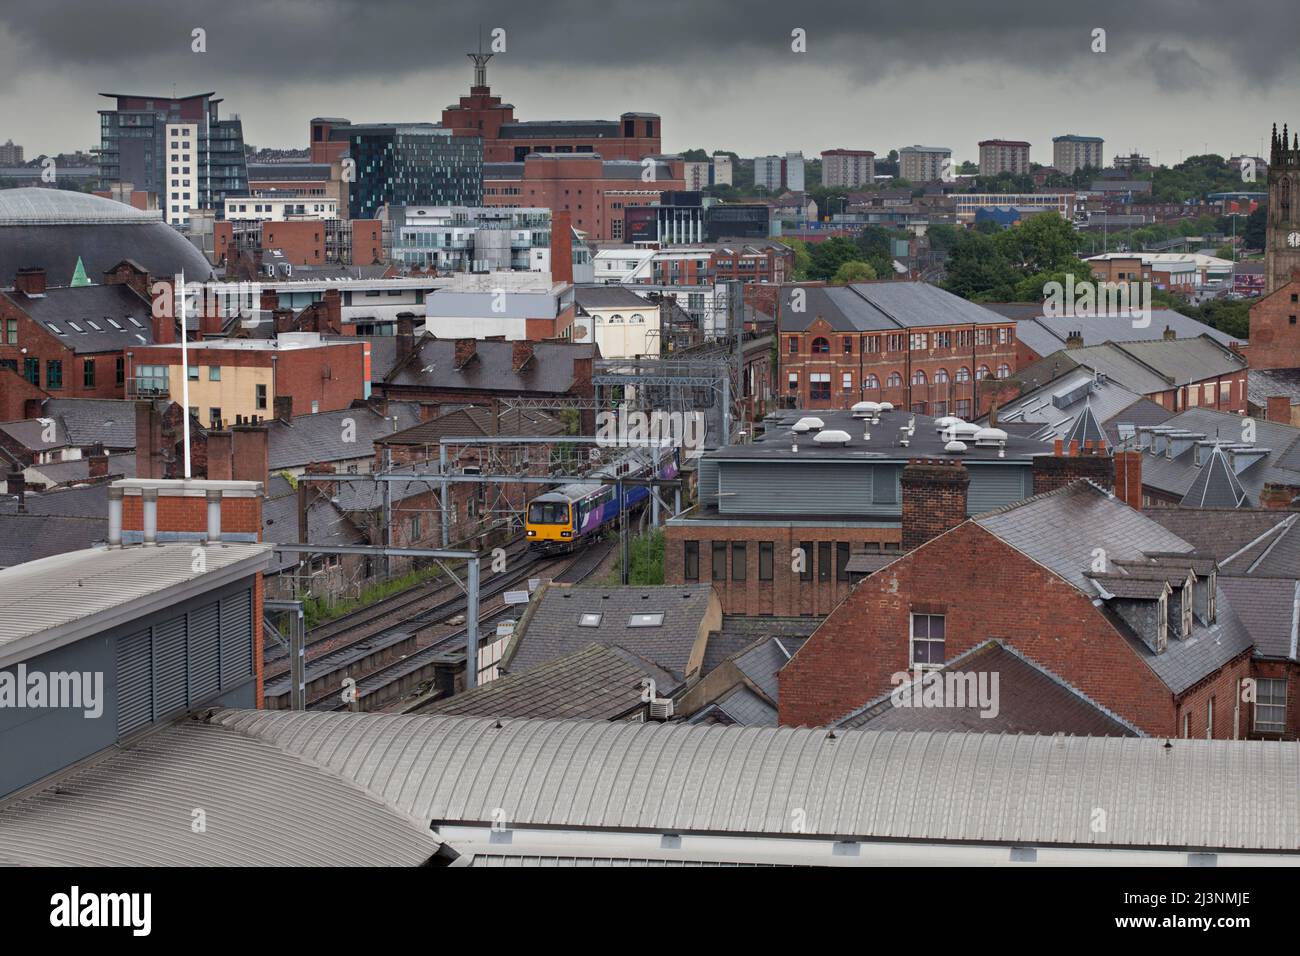 Treno a cremagliera classe 144 della ferrovia settentrionale che attraversa il paesaggio urbano nel centro di Leeds Foto Stock